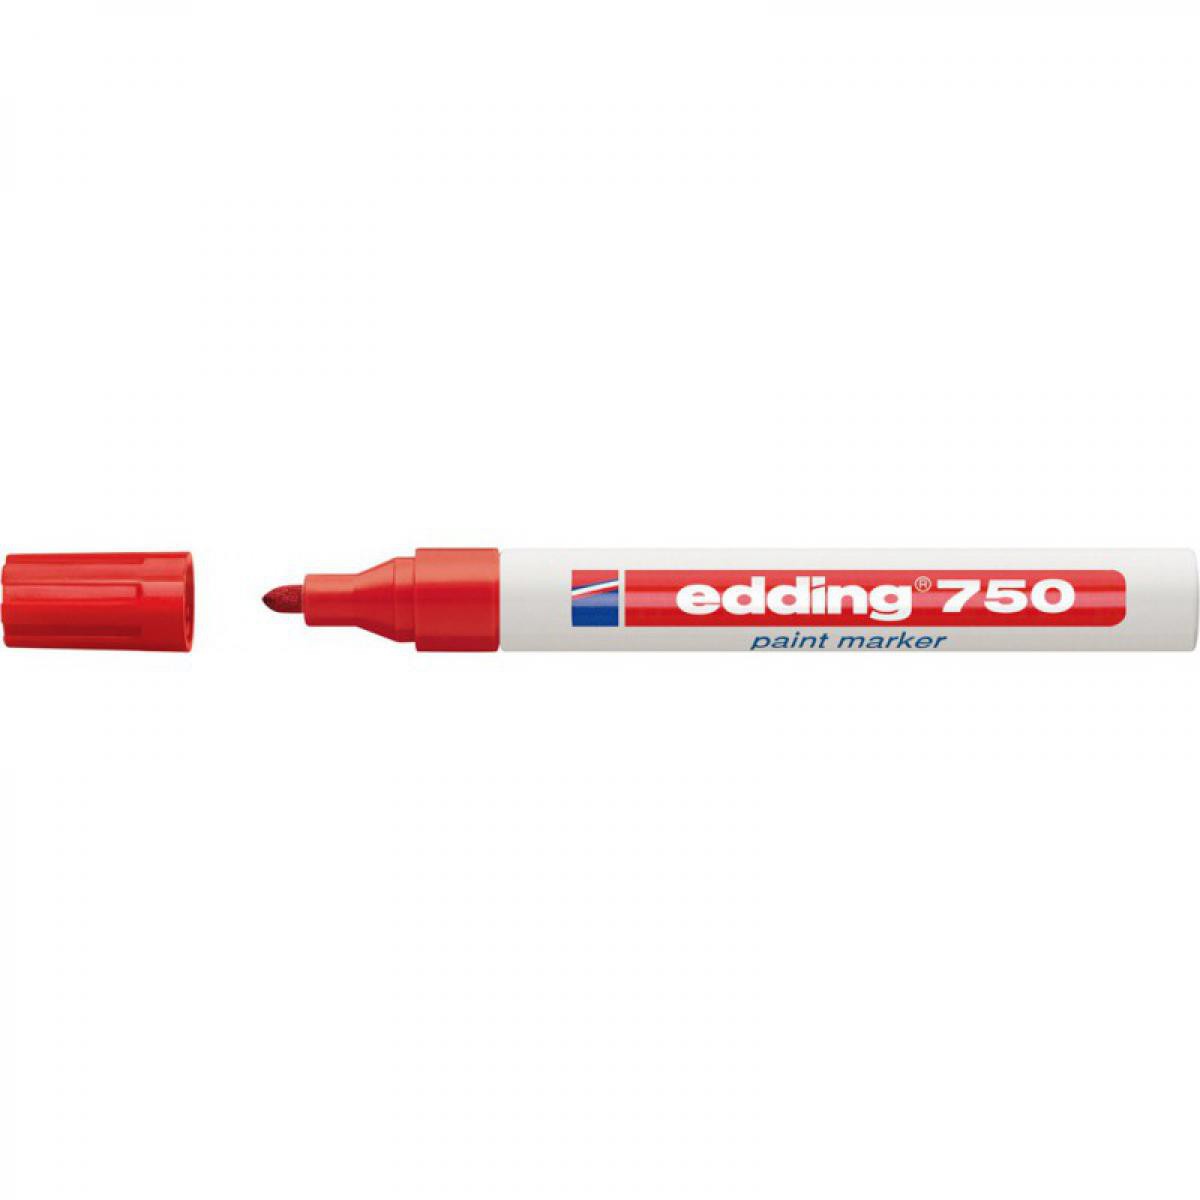 Edding - Marqueur. 750 rouge Edding - Pointes à tracer, cordeaux, marquage